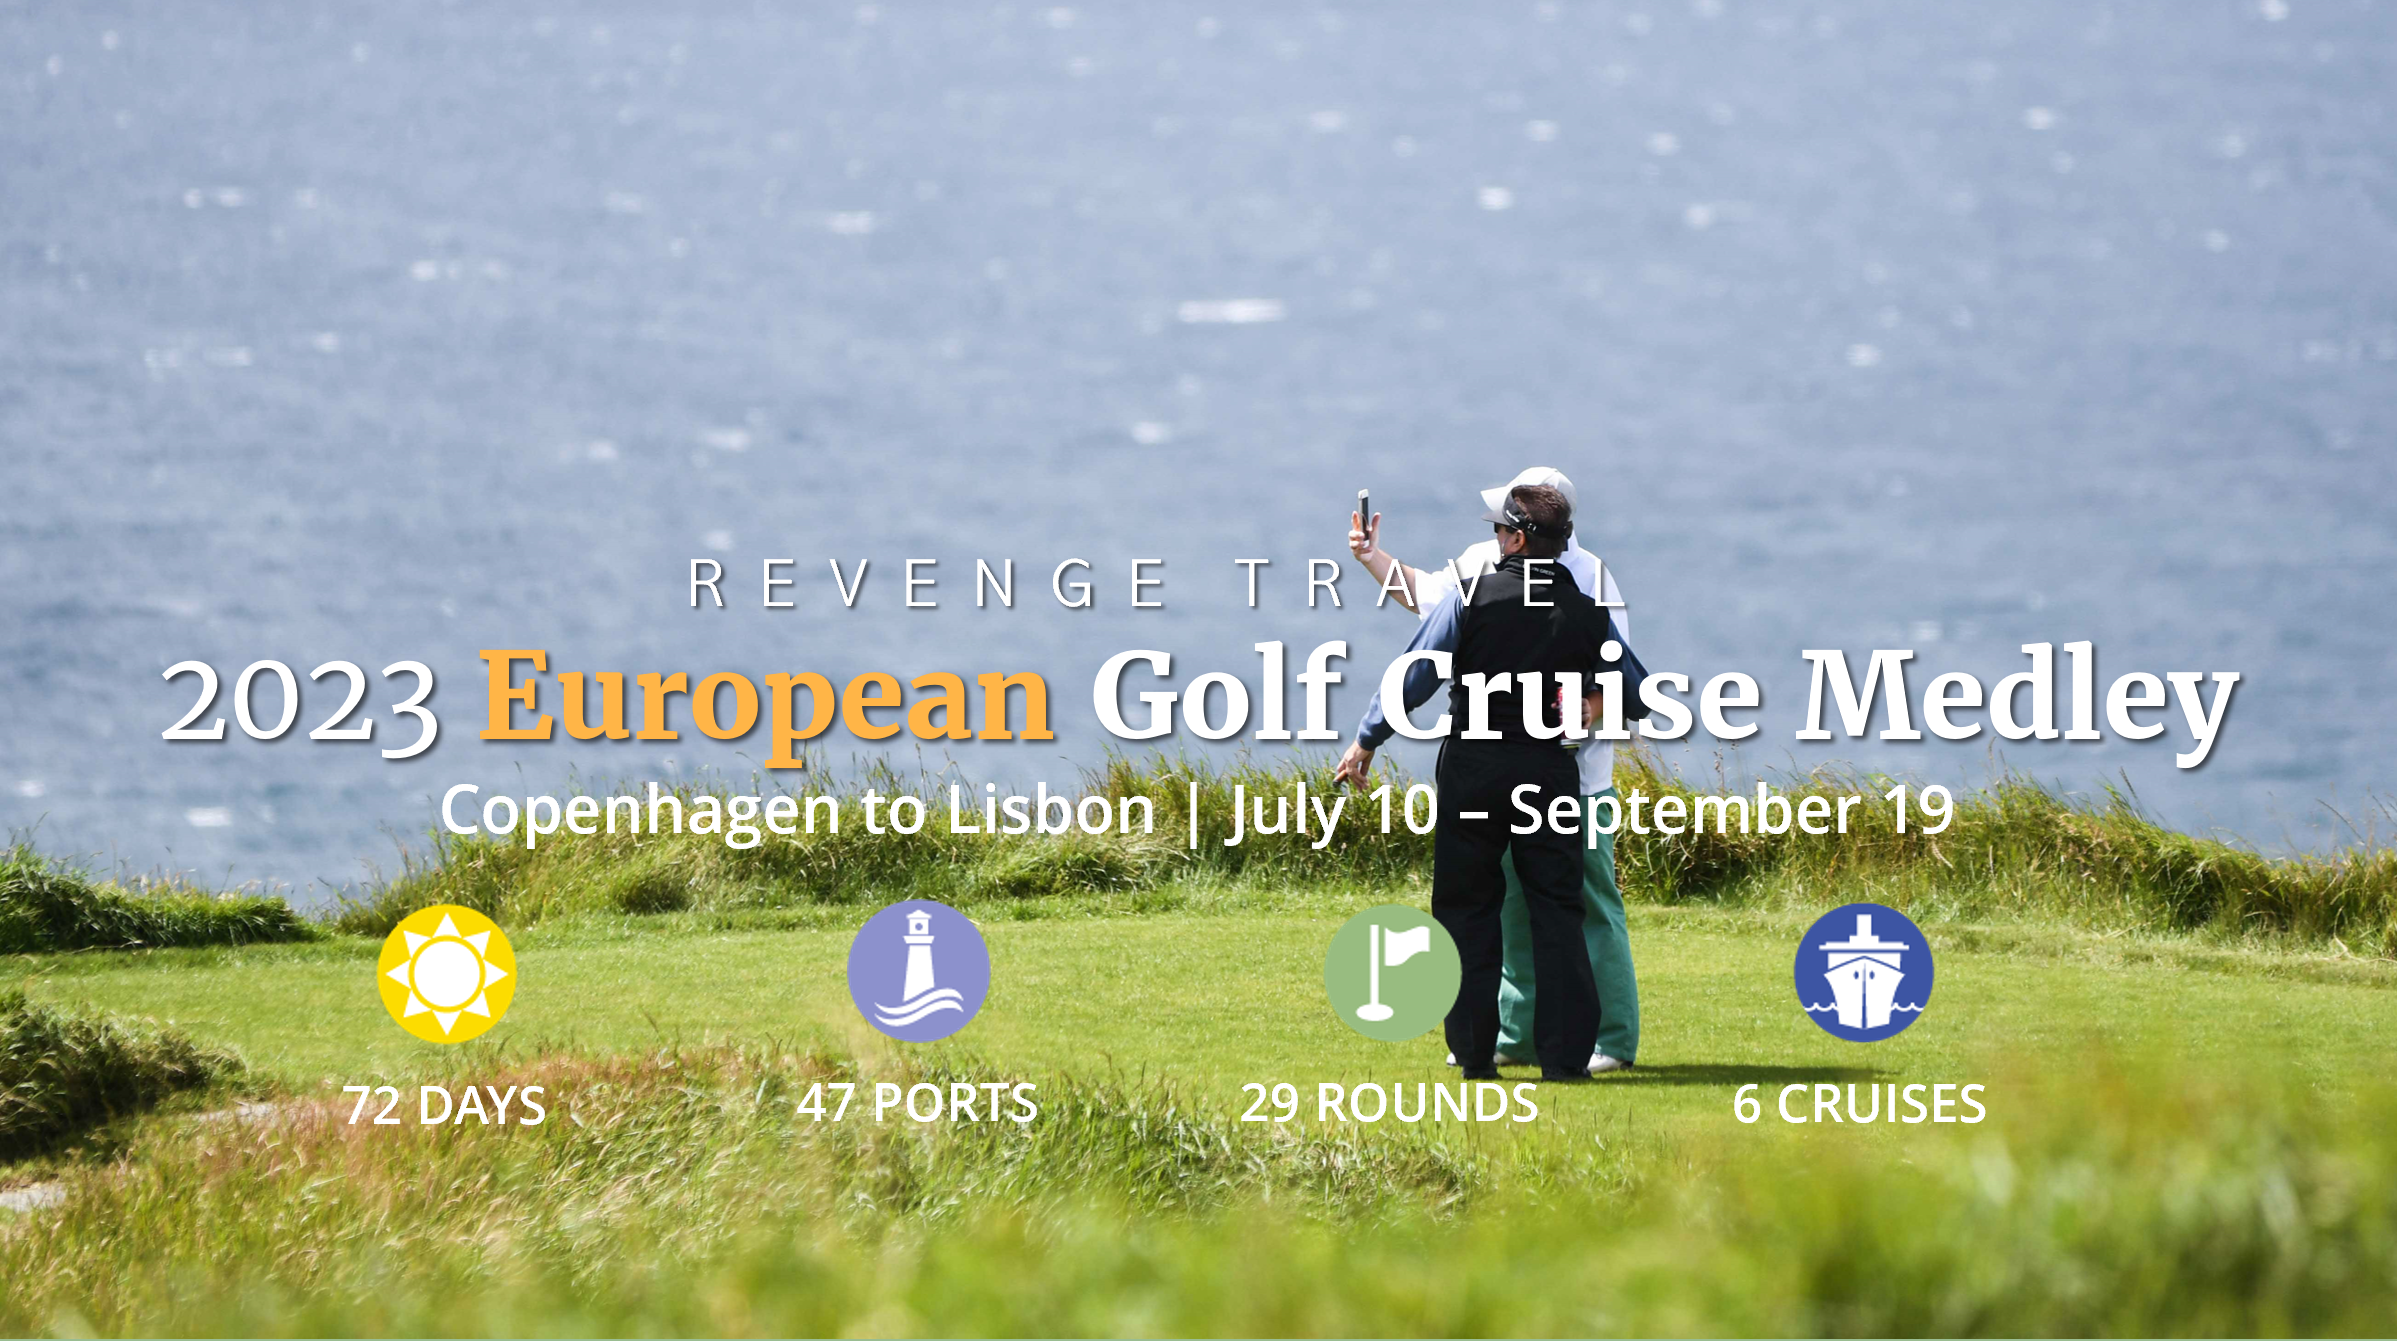 WEBINAR 24 FEB: European Golf Cruise Medley 2023 - PerryGolf.com